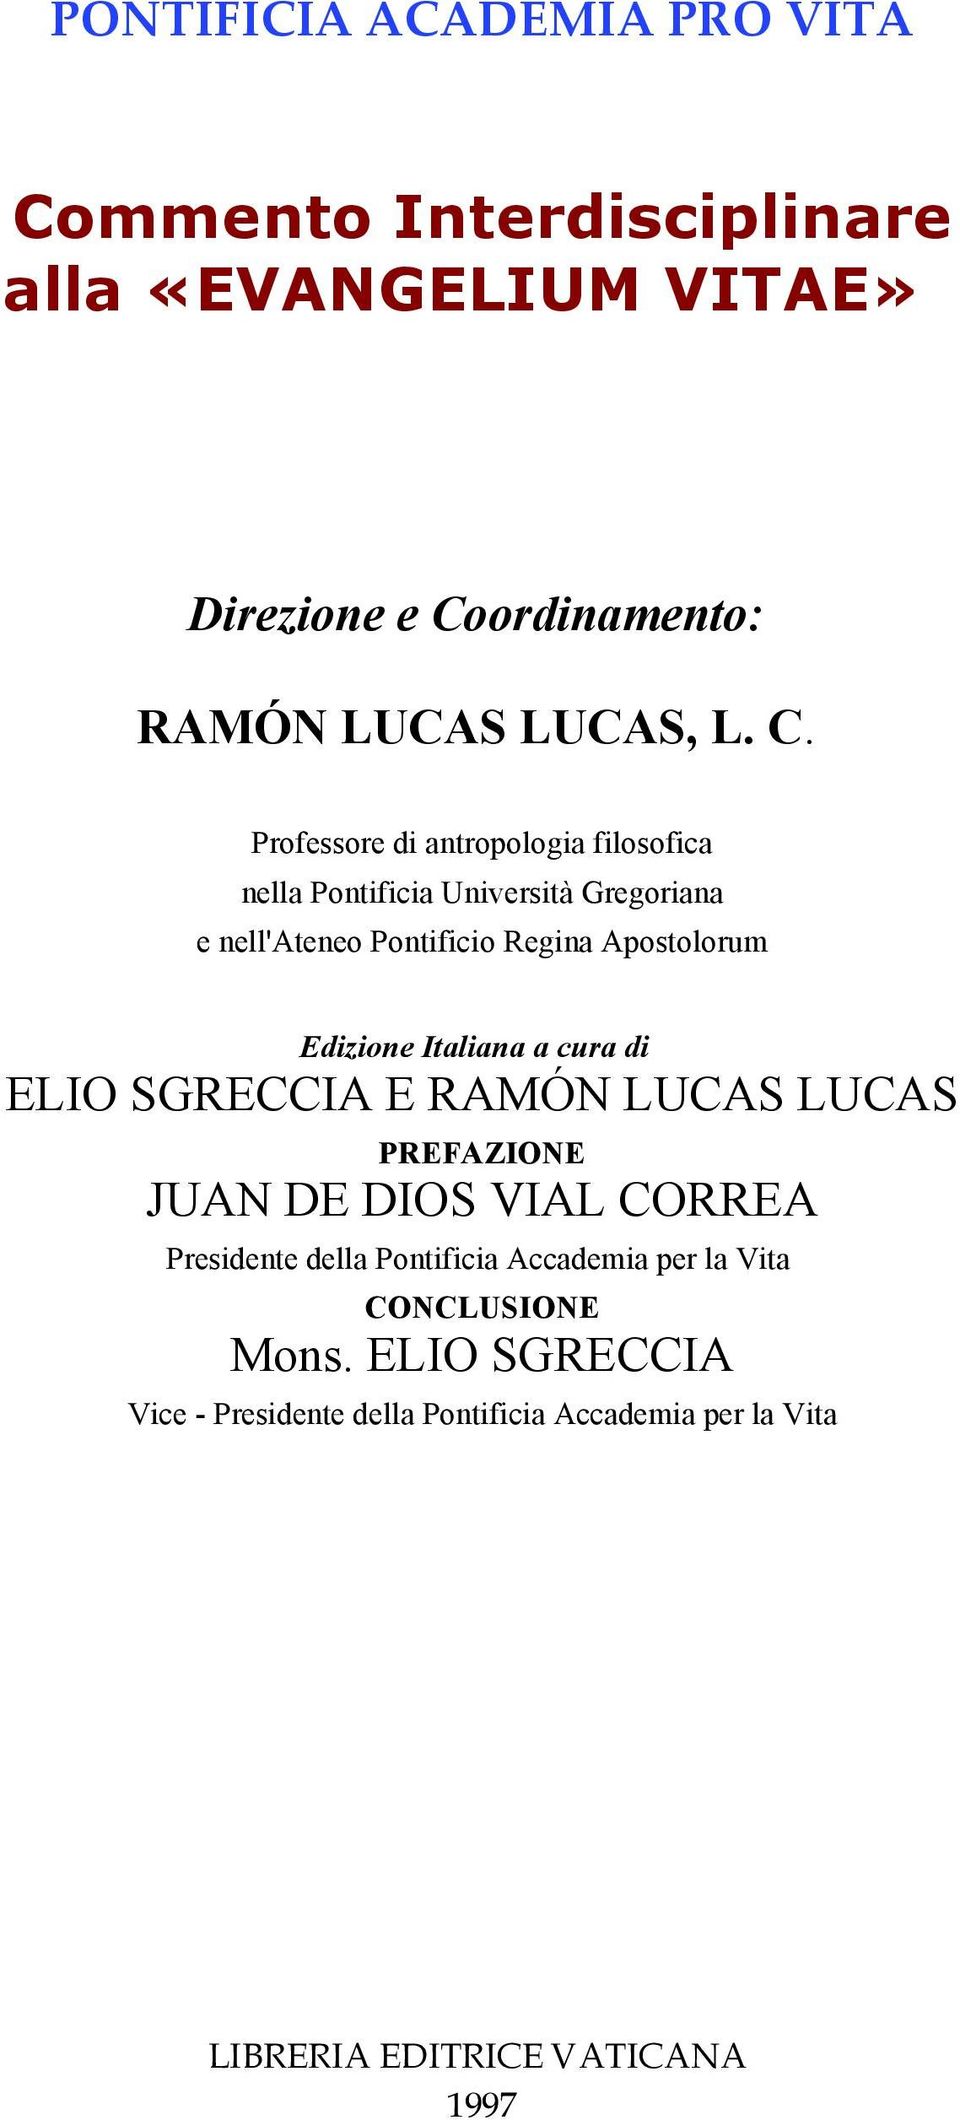 ordinamento: RAMÓN LUCAS LUCAS, L. C.